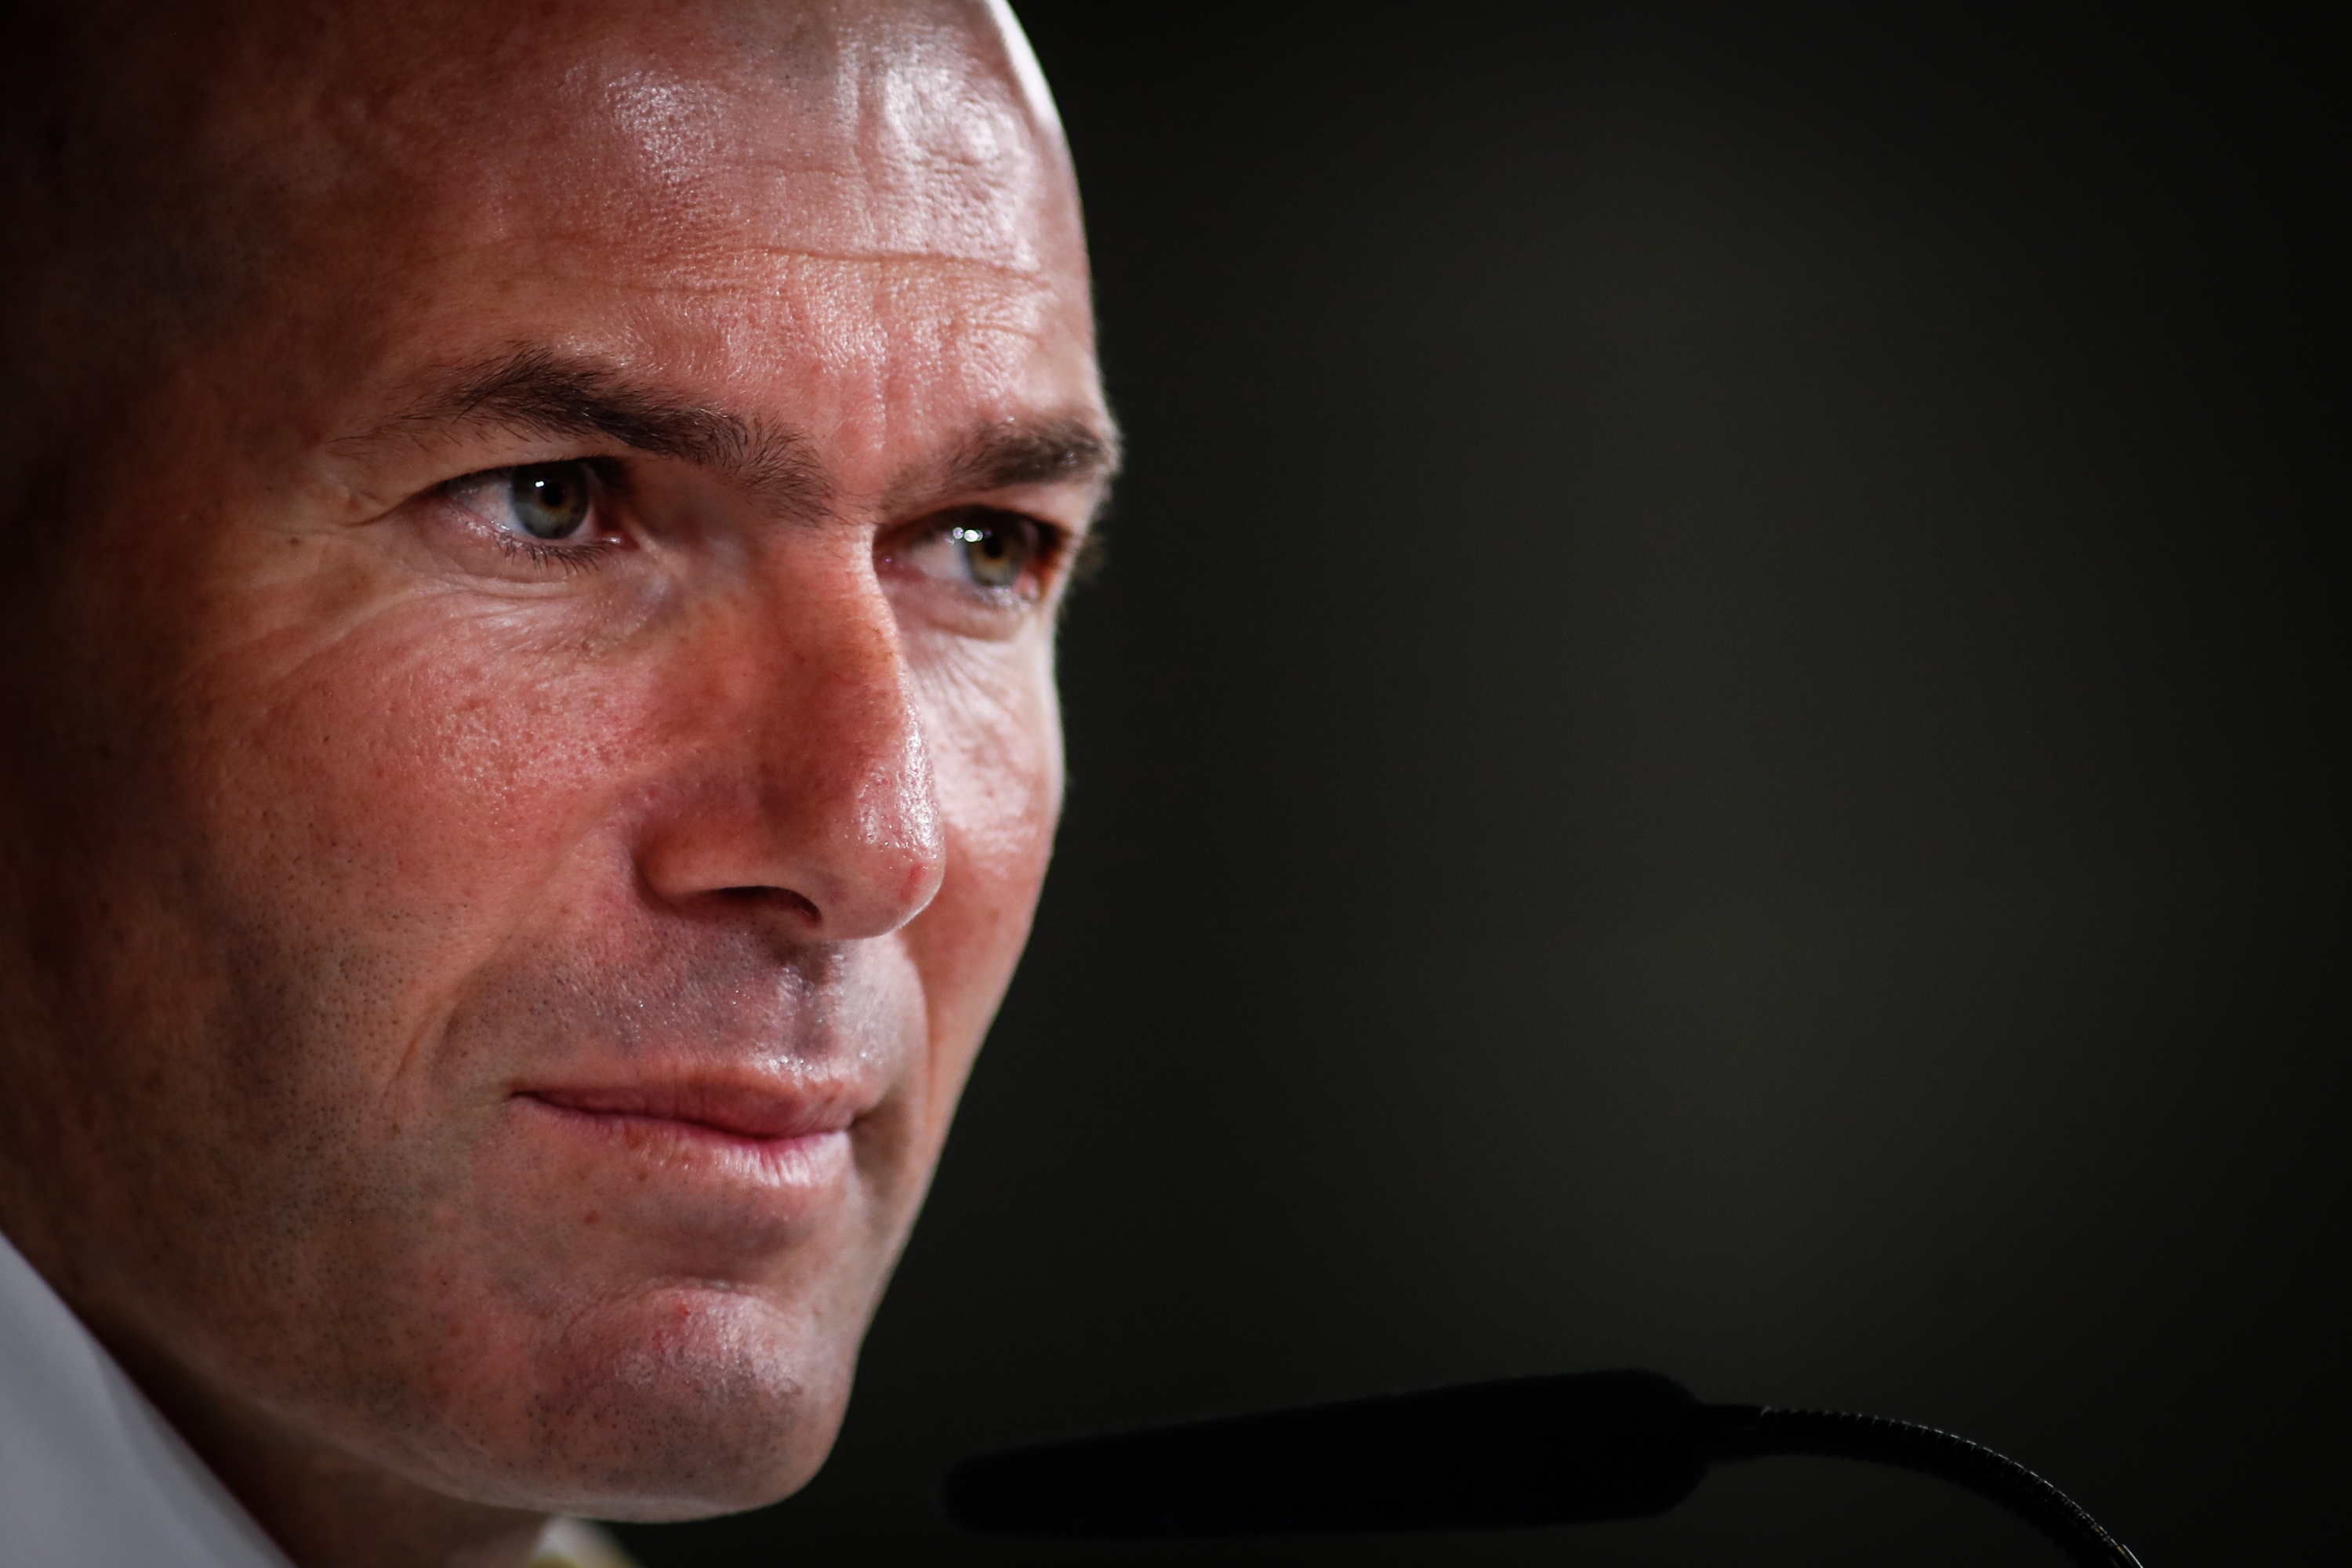 Zinedine Zidane - HQ Images x 60 (Part3)